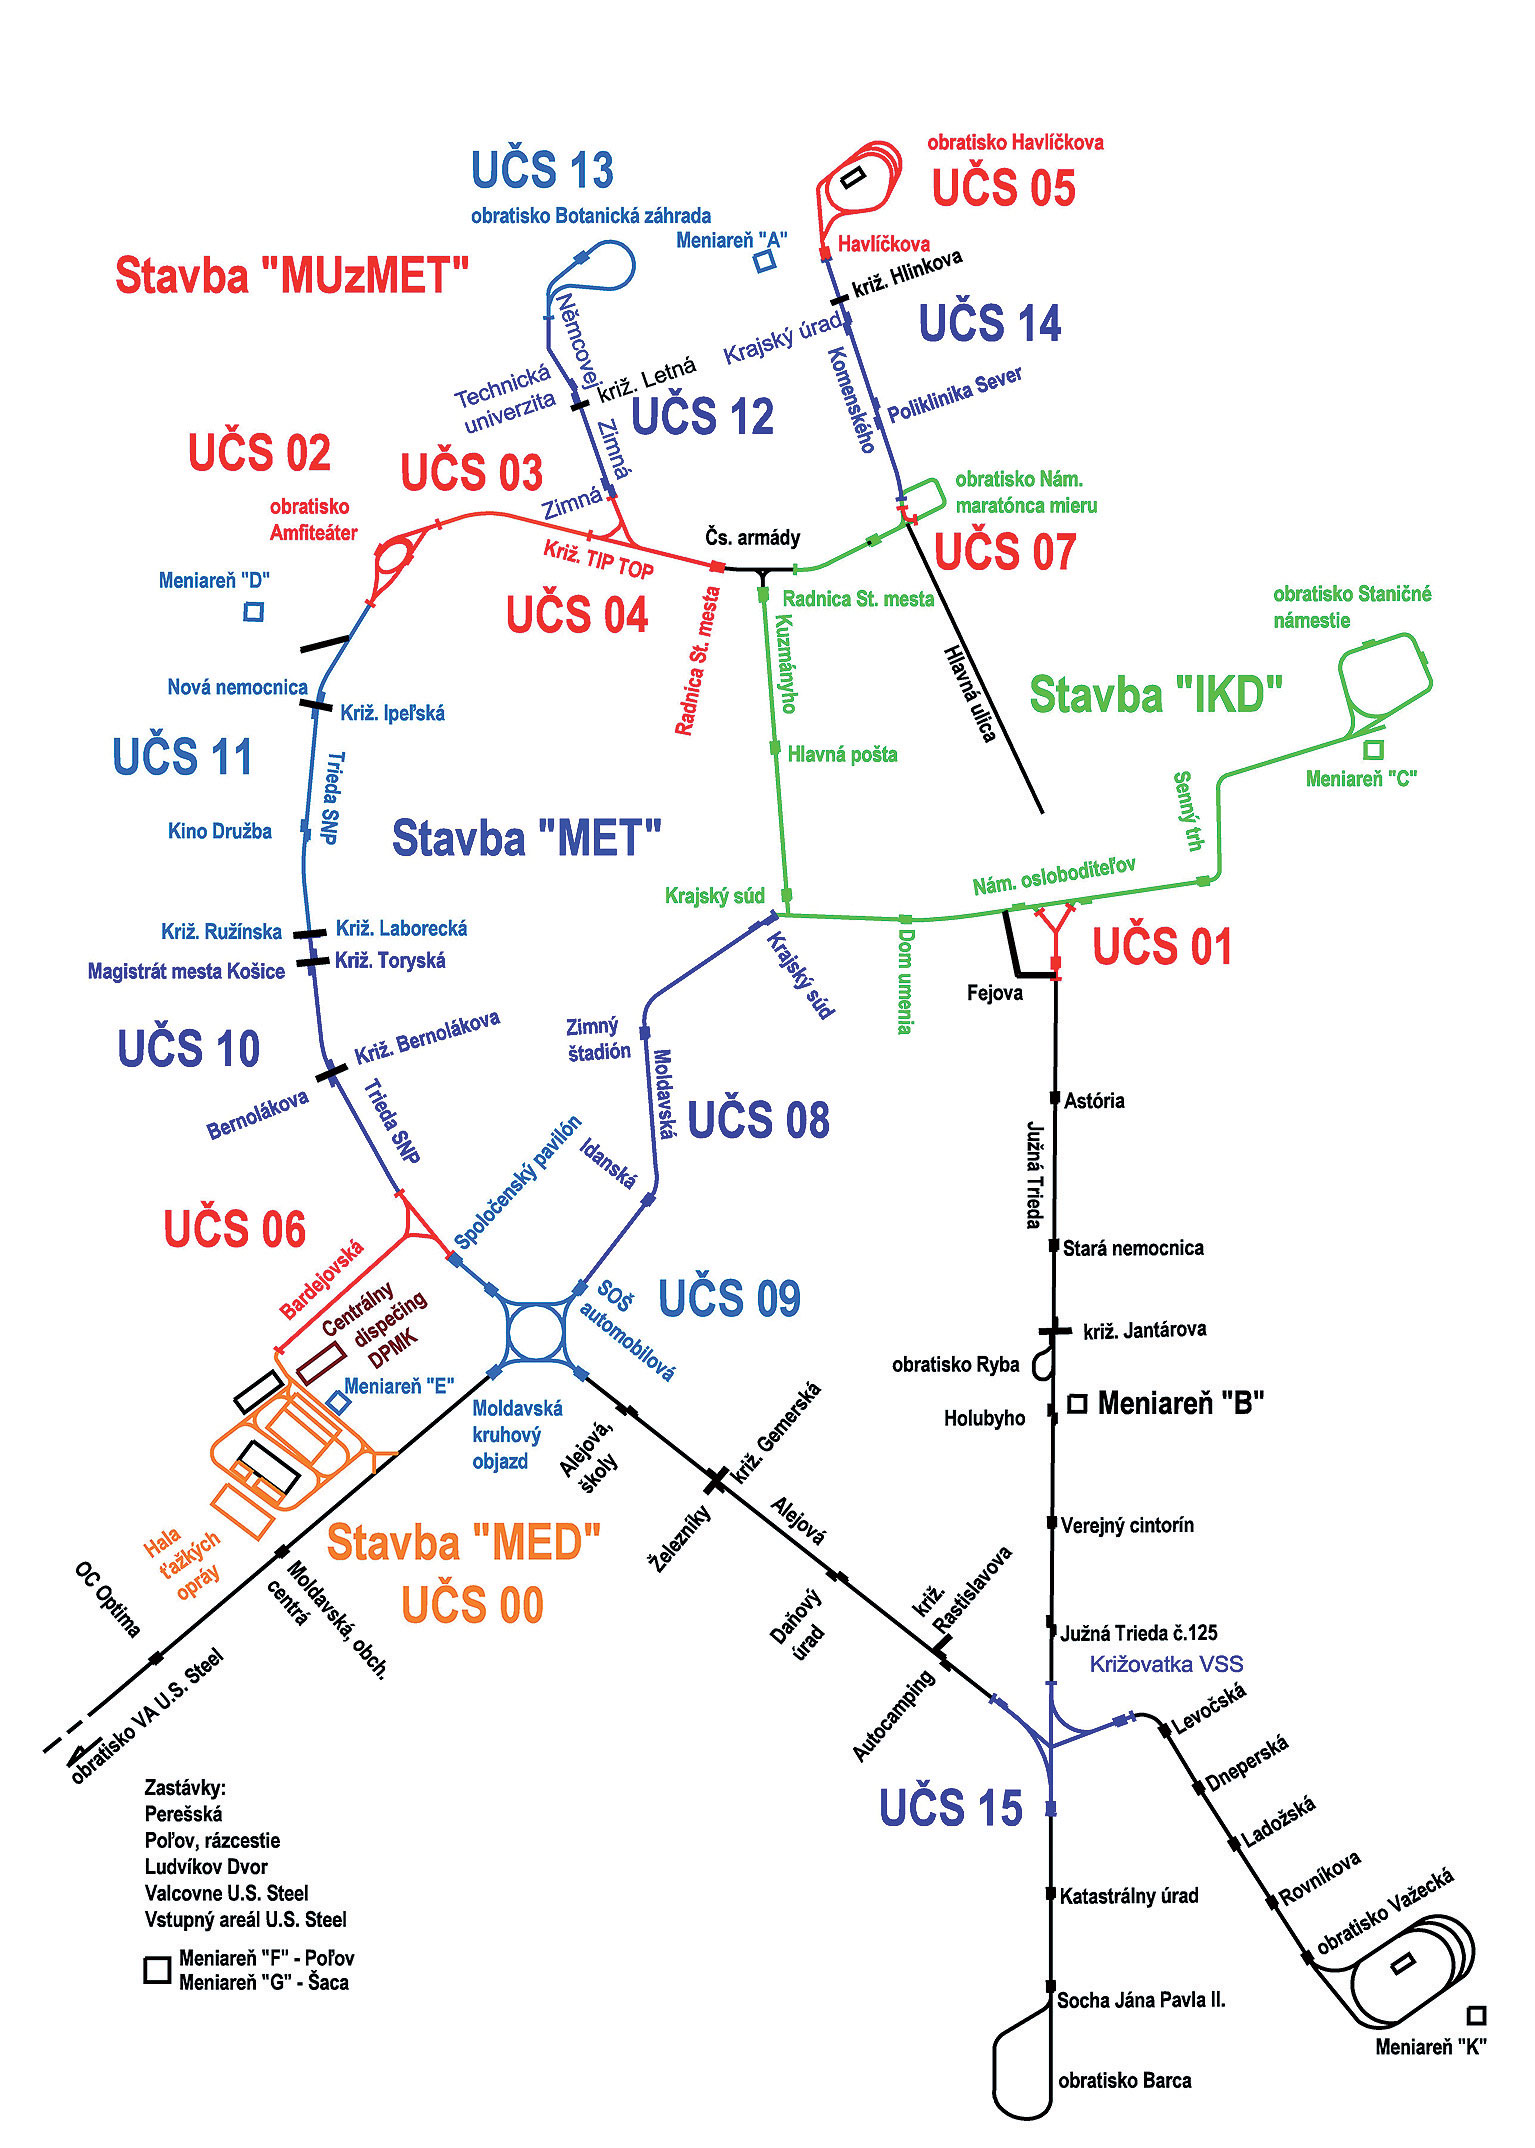 Schéma tratí – pôvodný plán do r. 2000